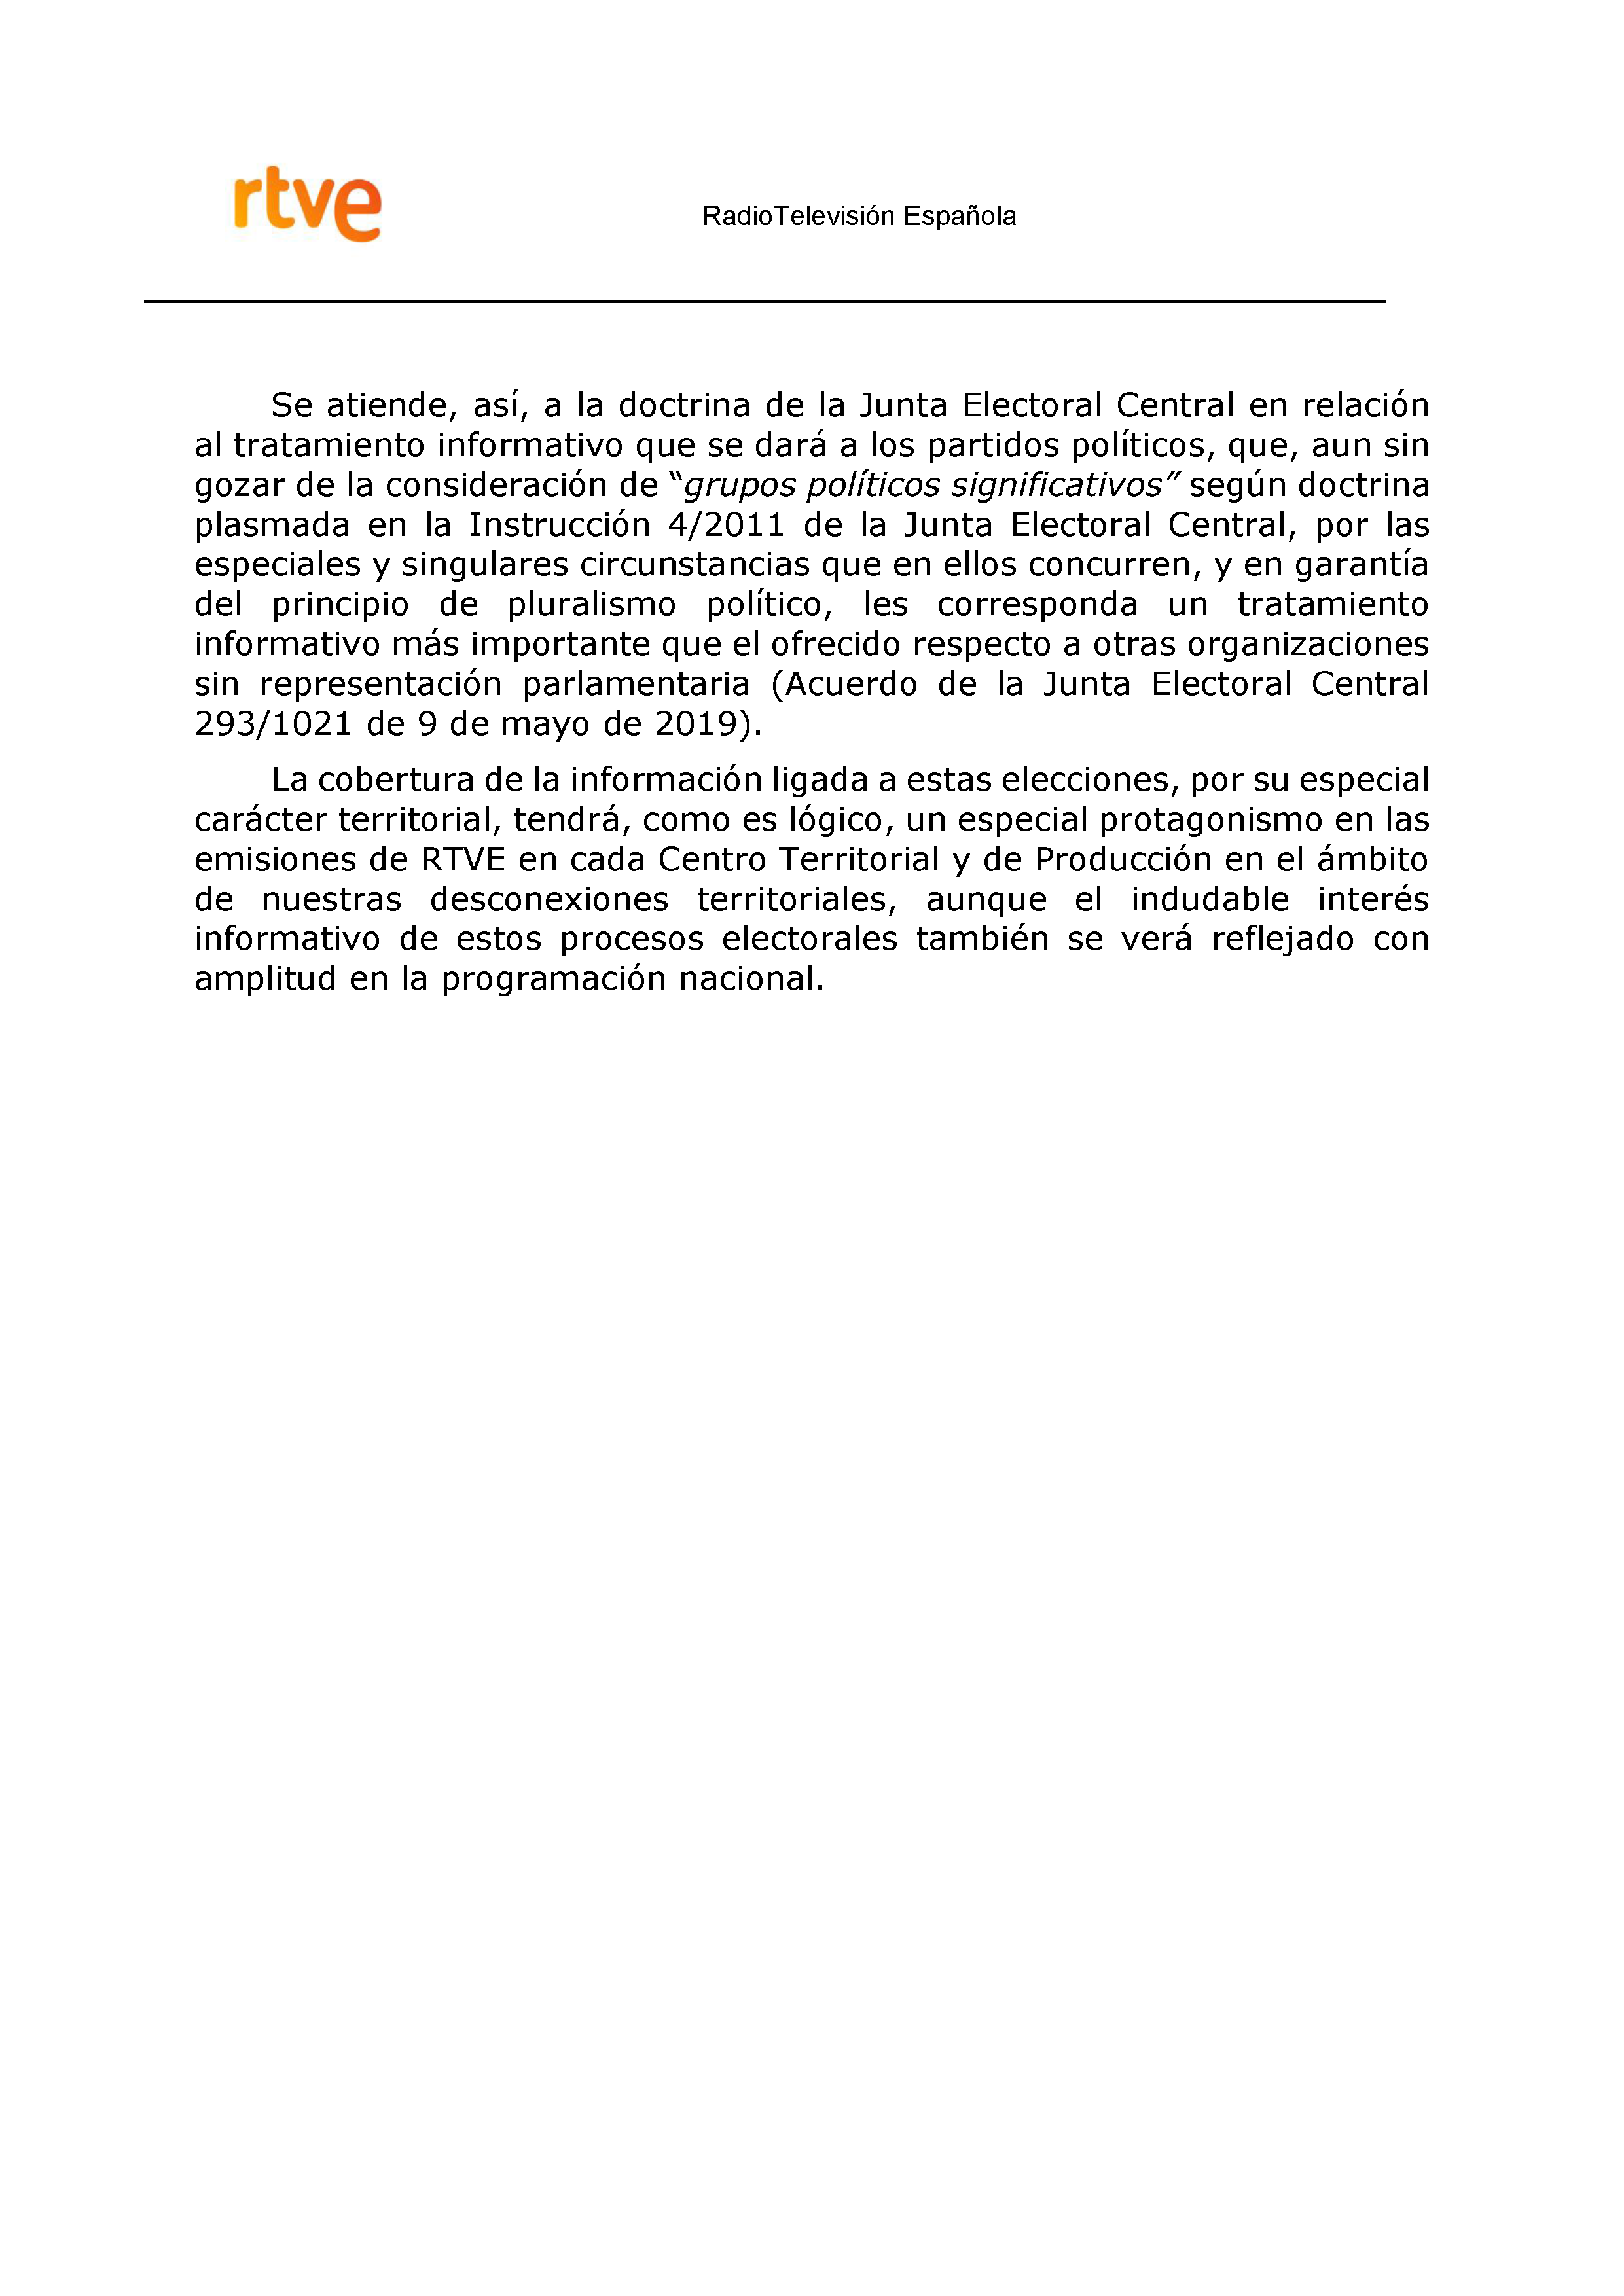 PLAN DE COBERTURA INFORMATIVA RTVE EN EXTREMADURA Pag 4